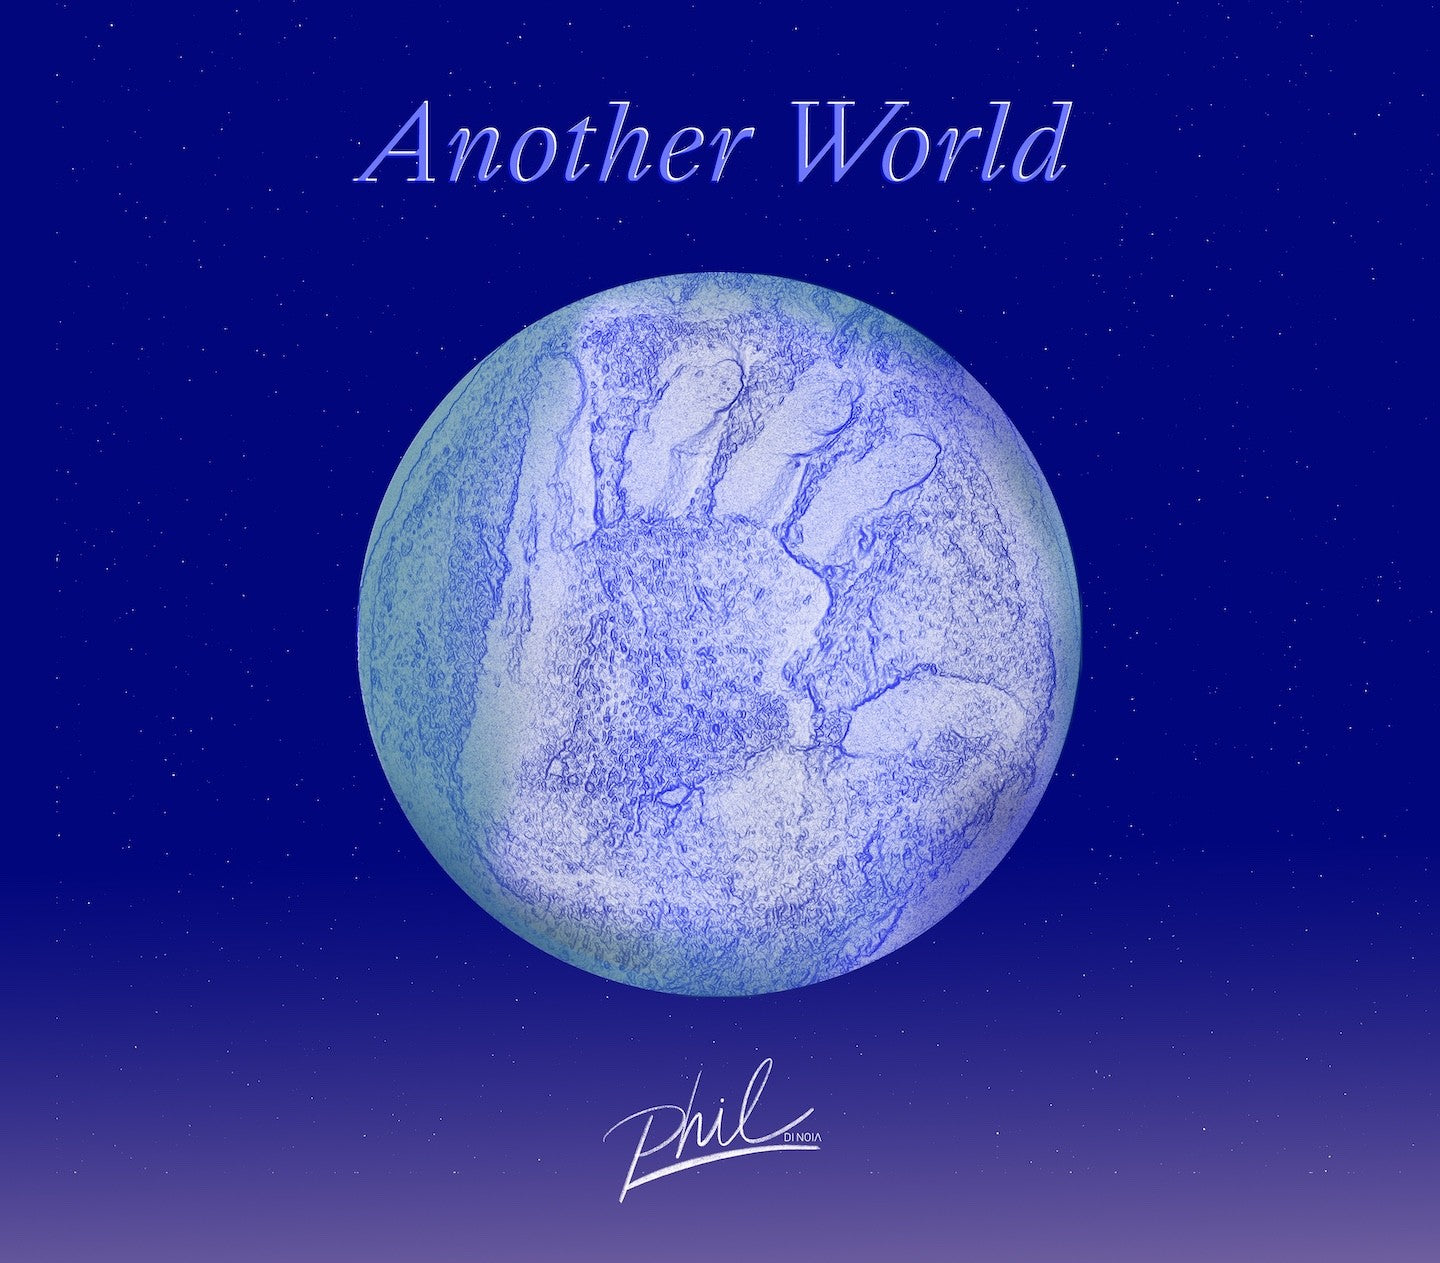 Pochette de : ANOTHER WORLD - PHIL DI NOIA (CD)